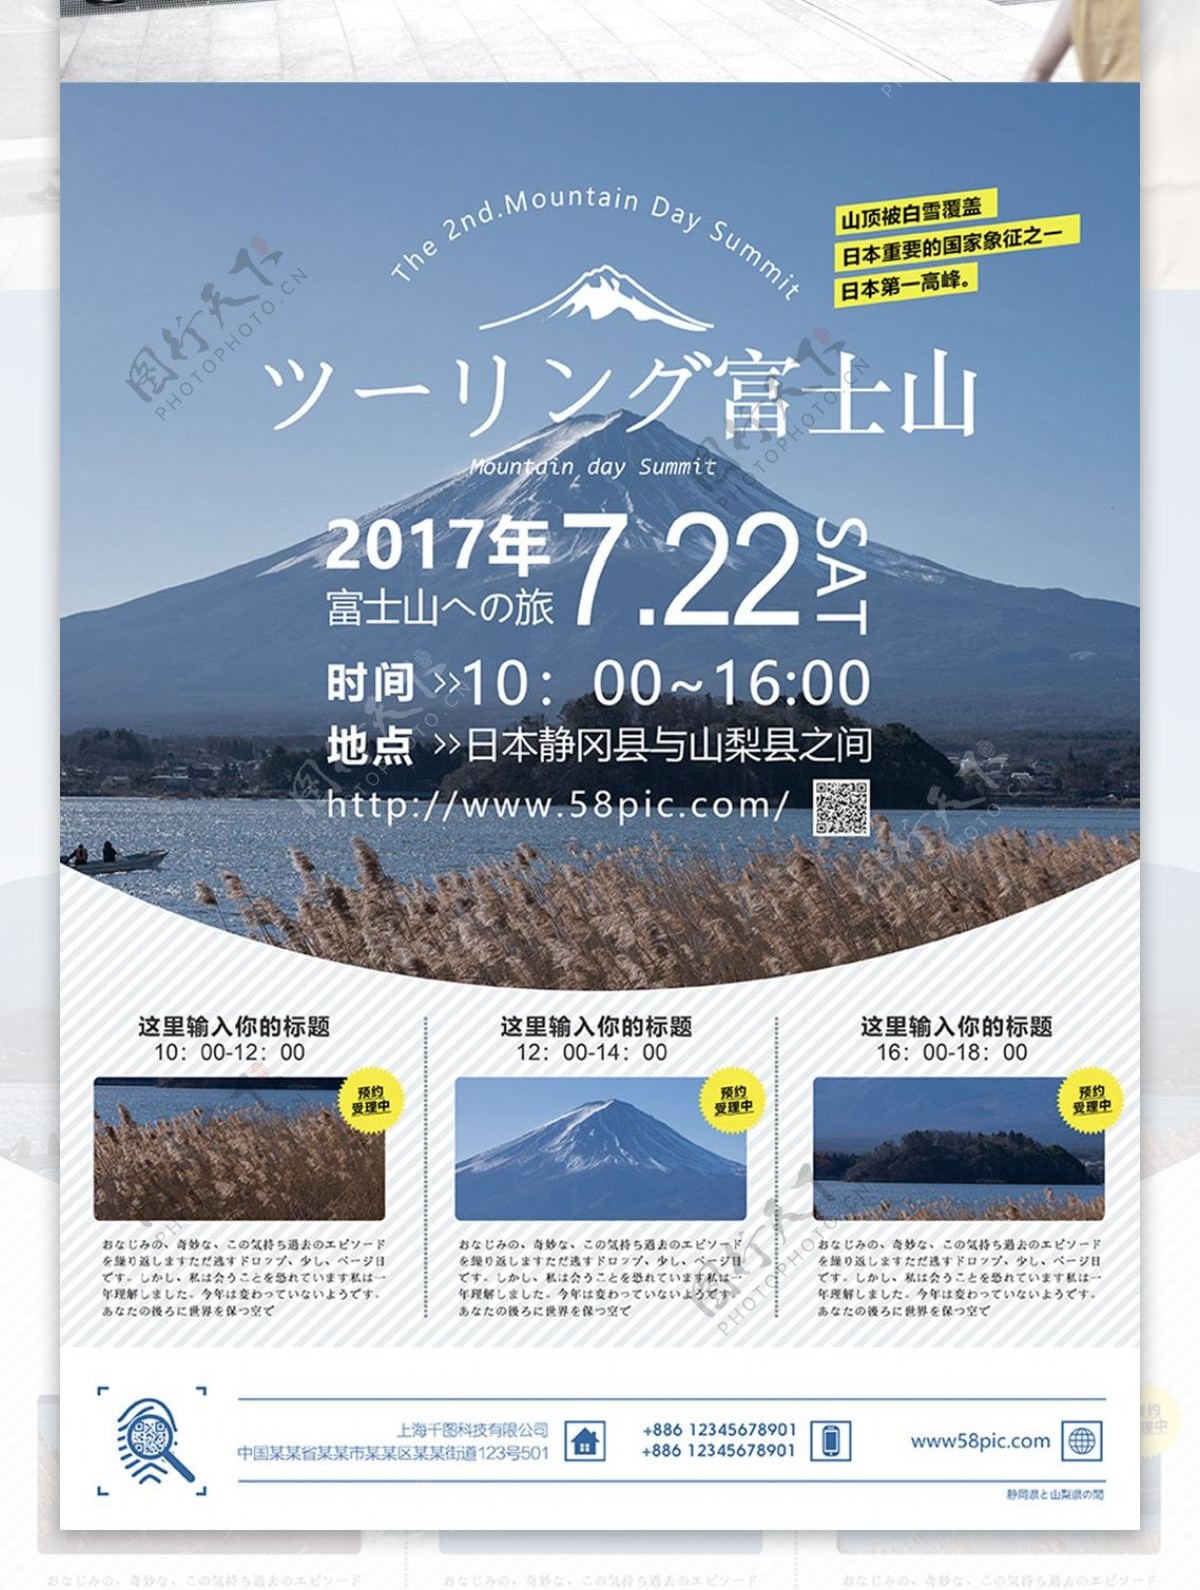 简约风日本富士山旅游宣传海报